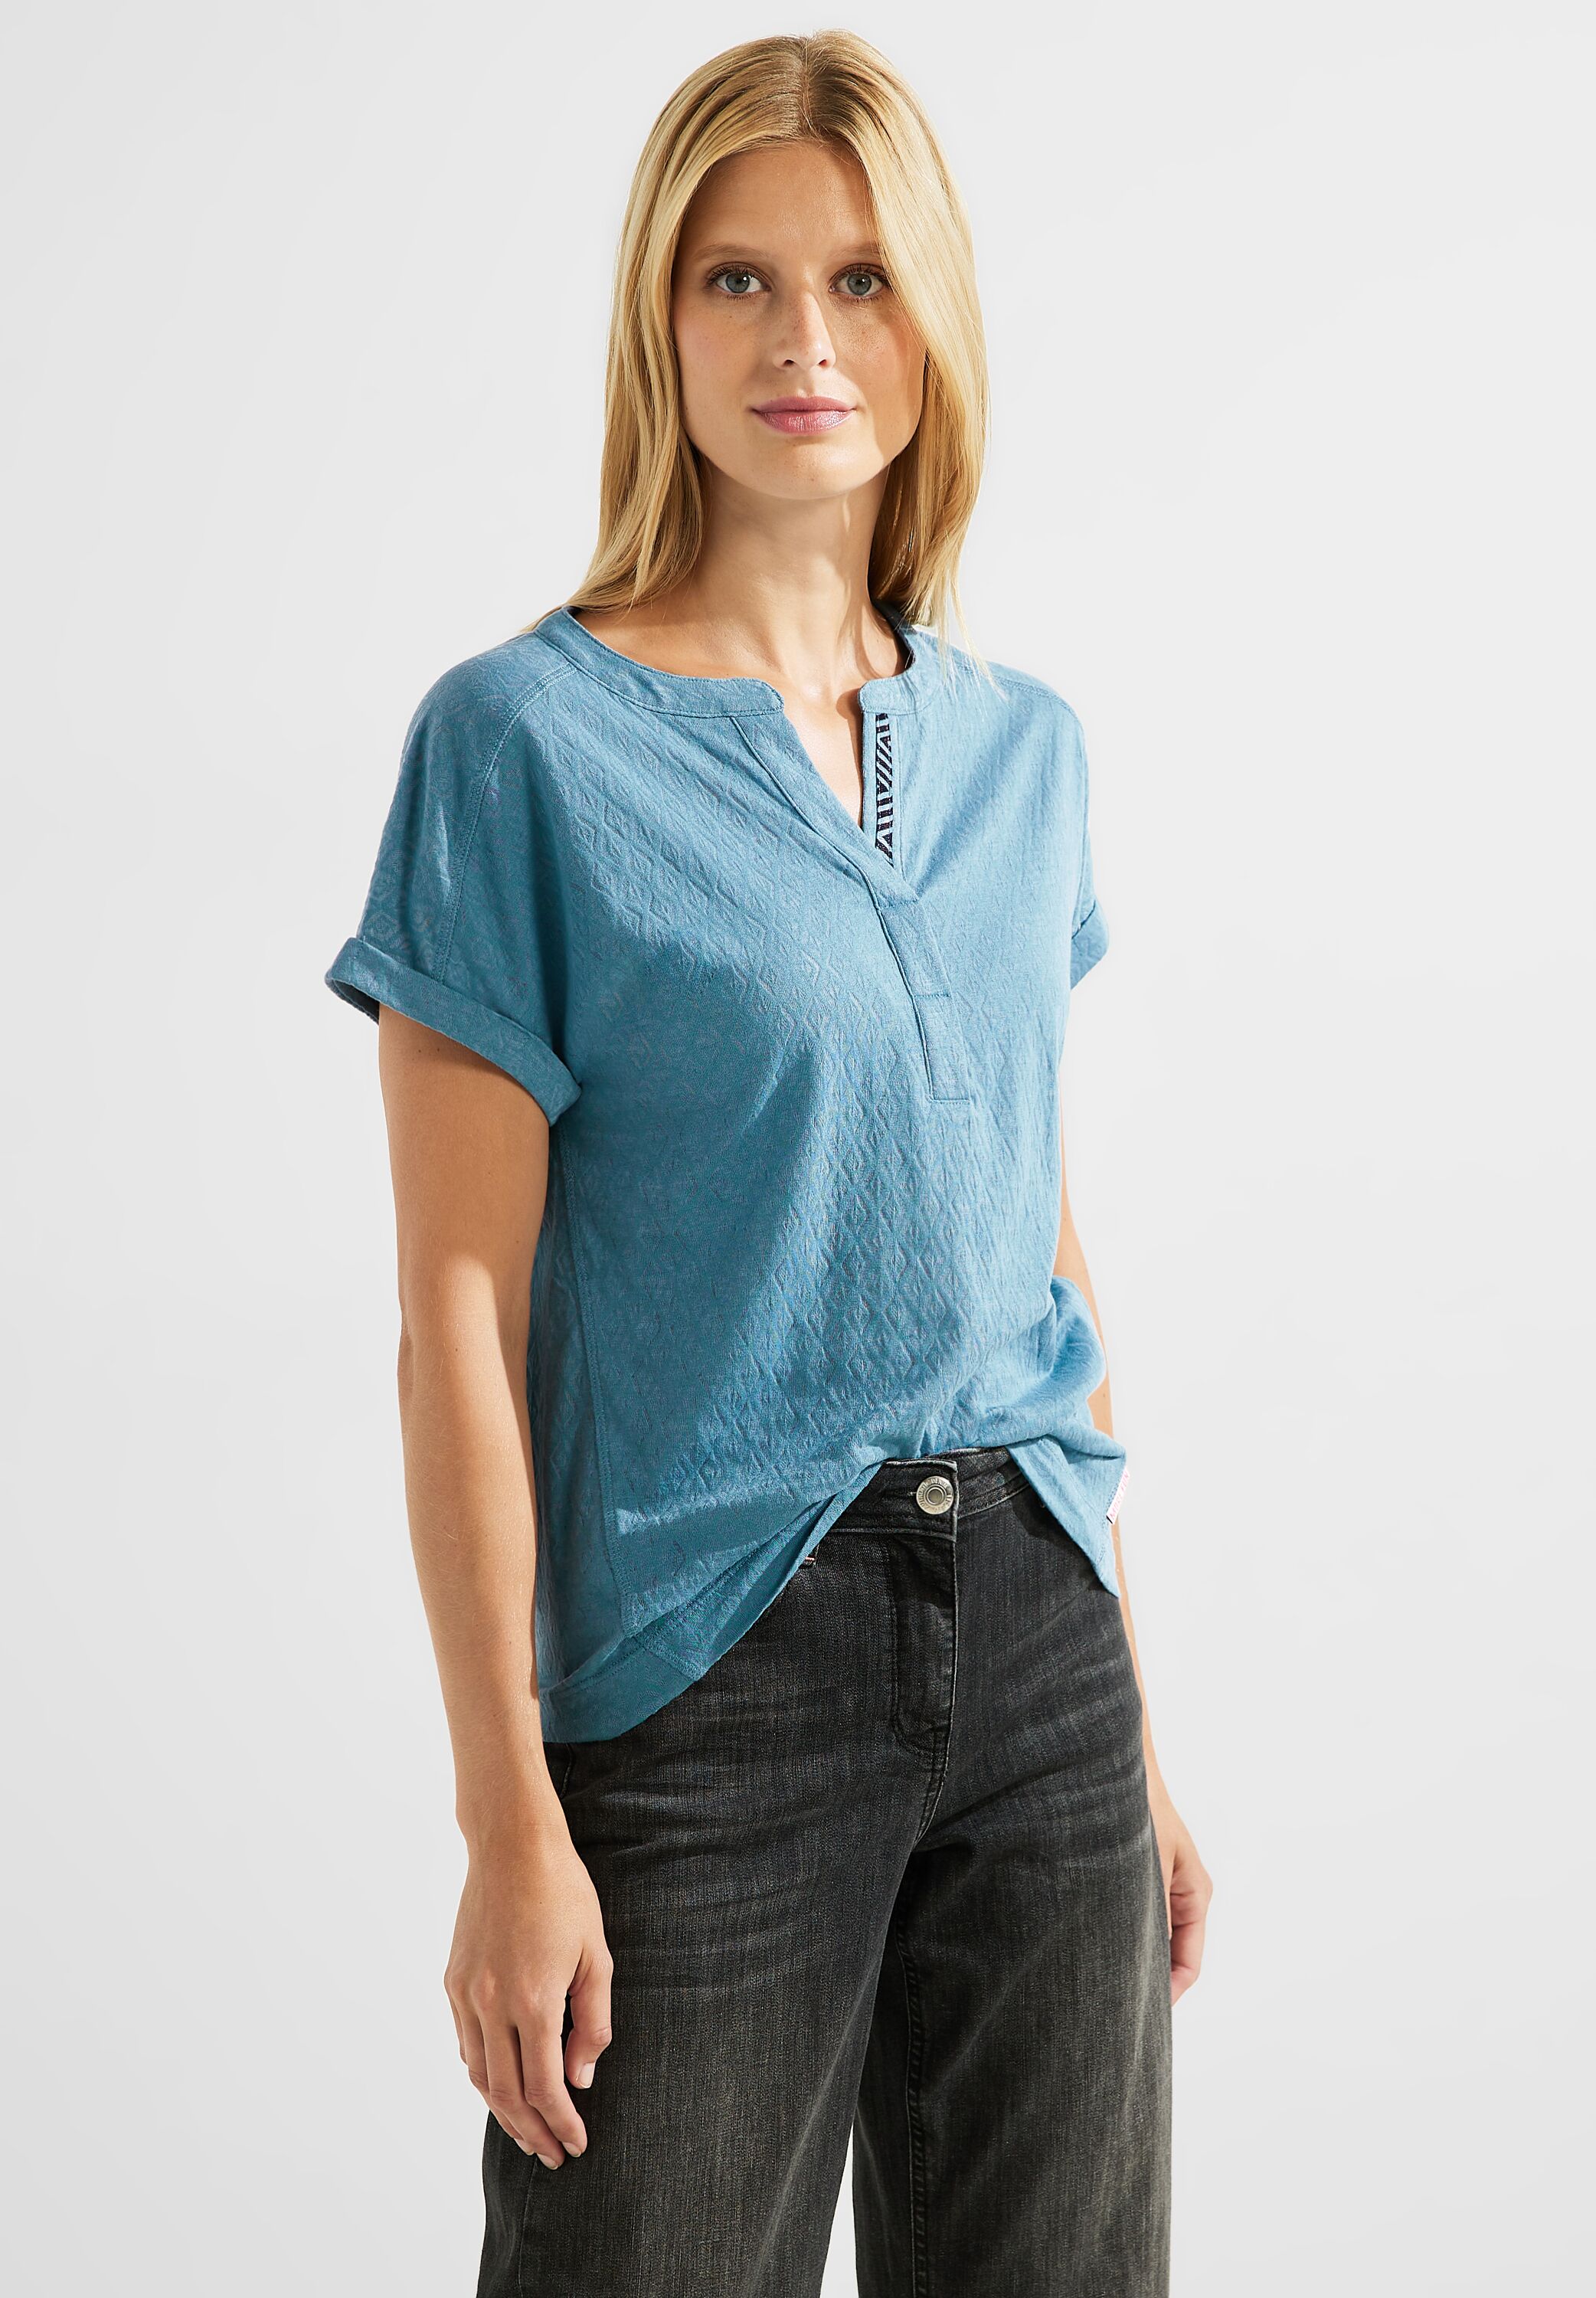 in im B320237-14931 Adriatic reduziert - SALE CECIL CONCEPT Blue T-Shirt Mode